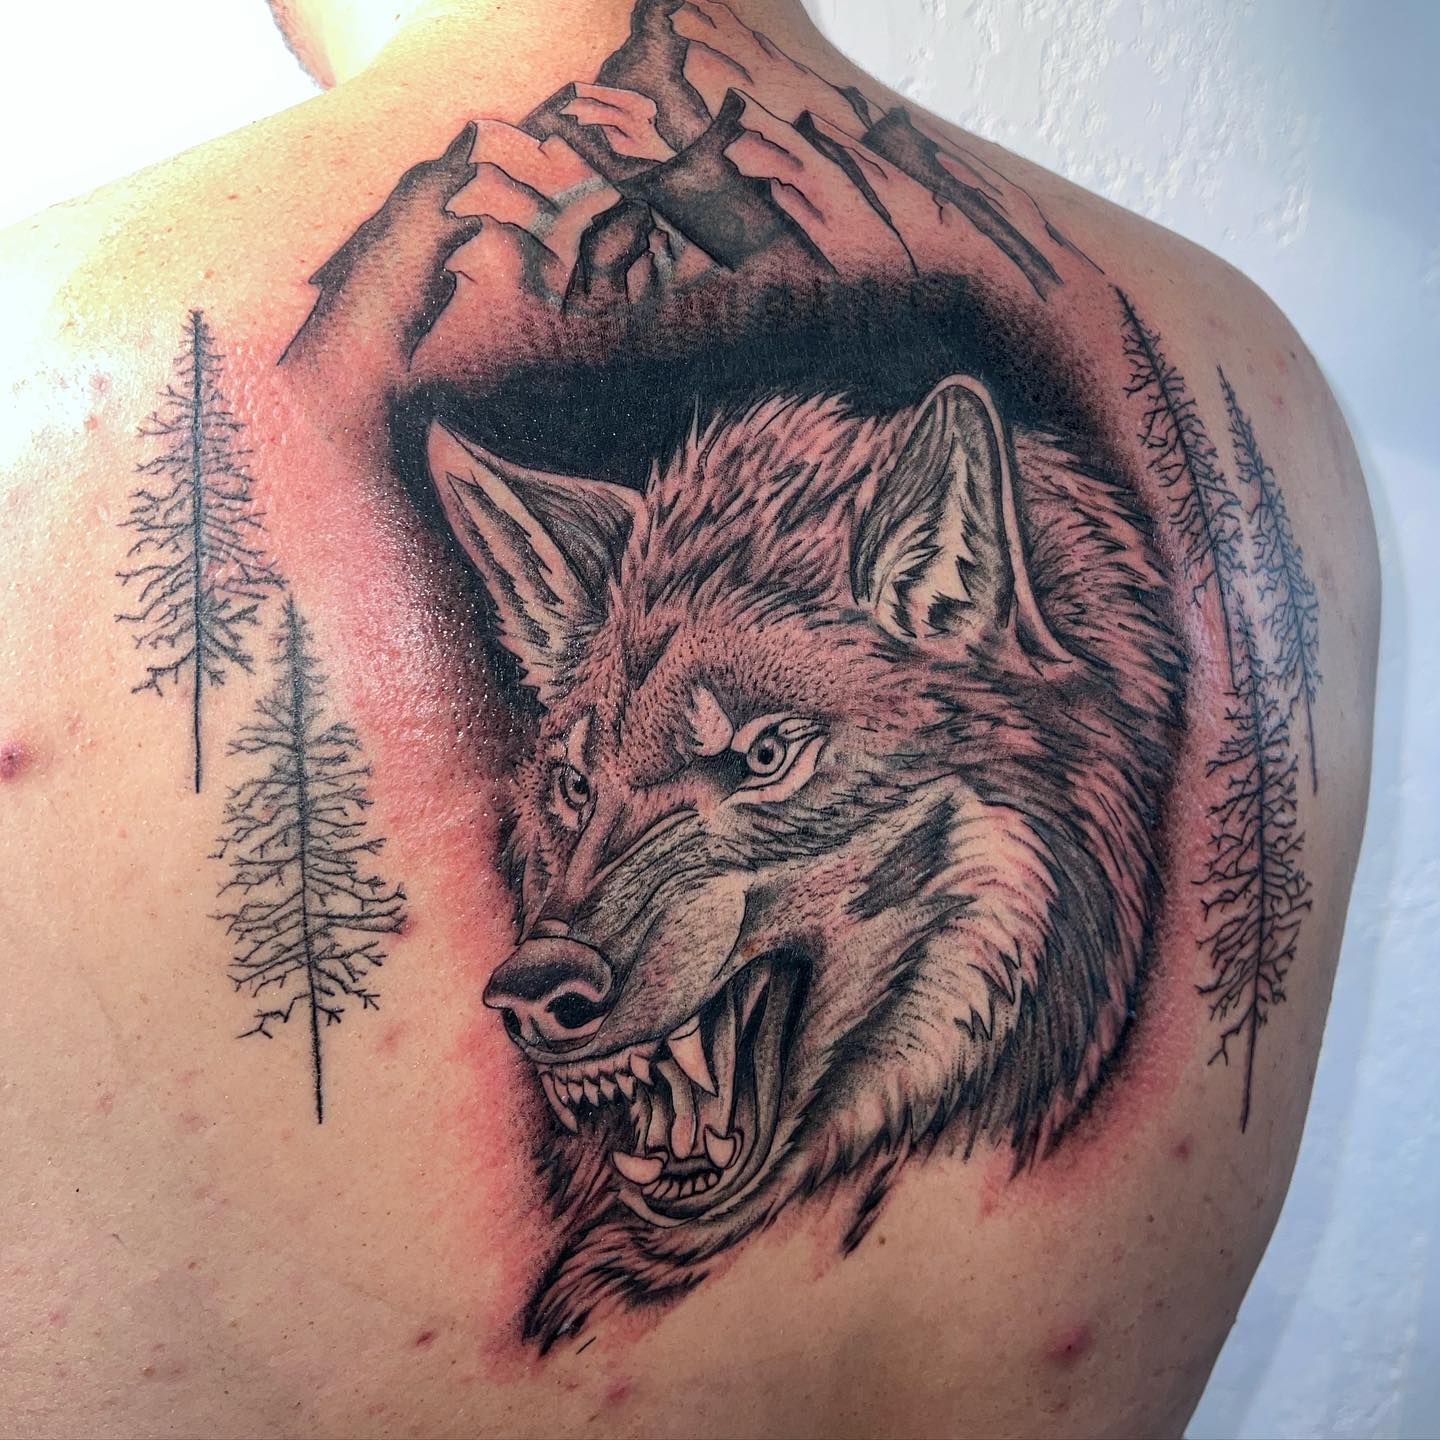 Tatuaje detallado de lobo en la espalda.